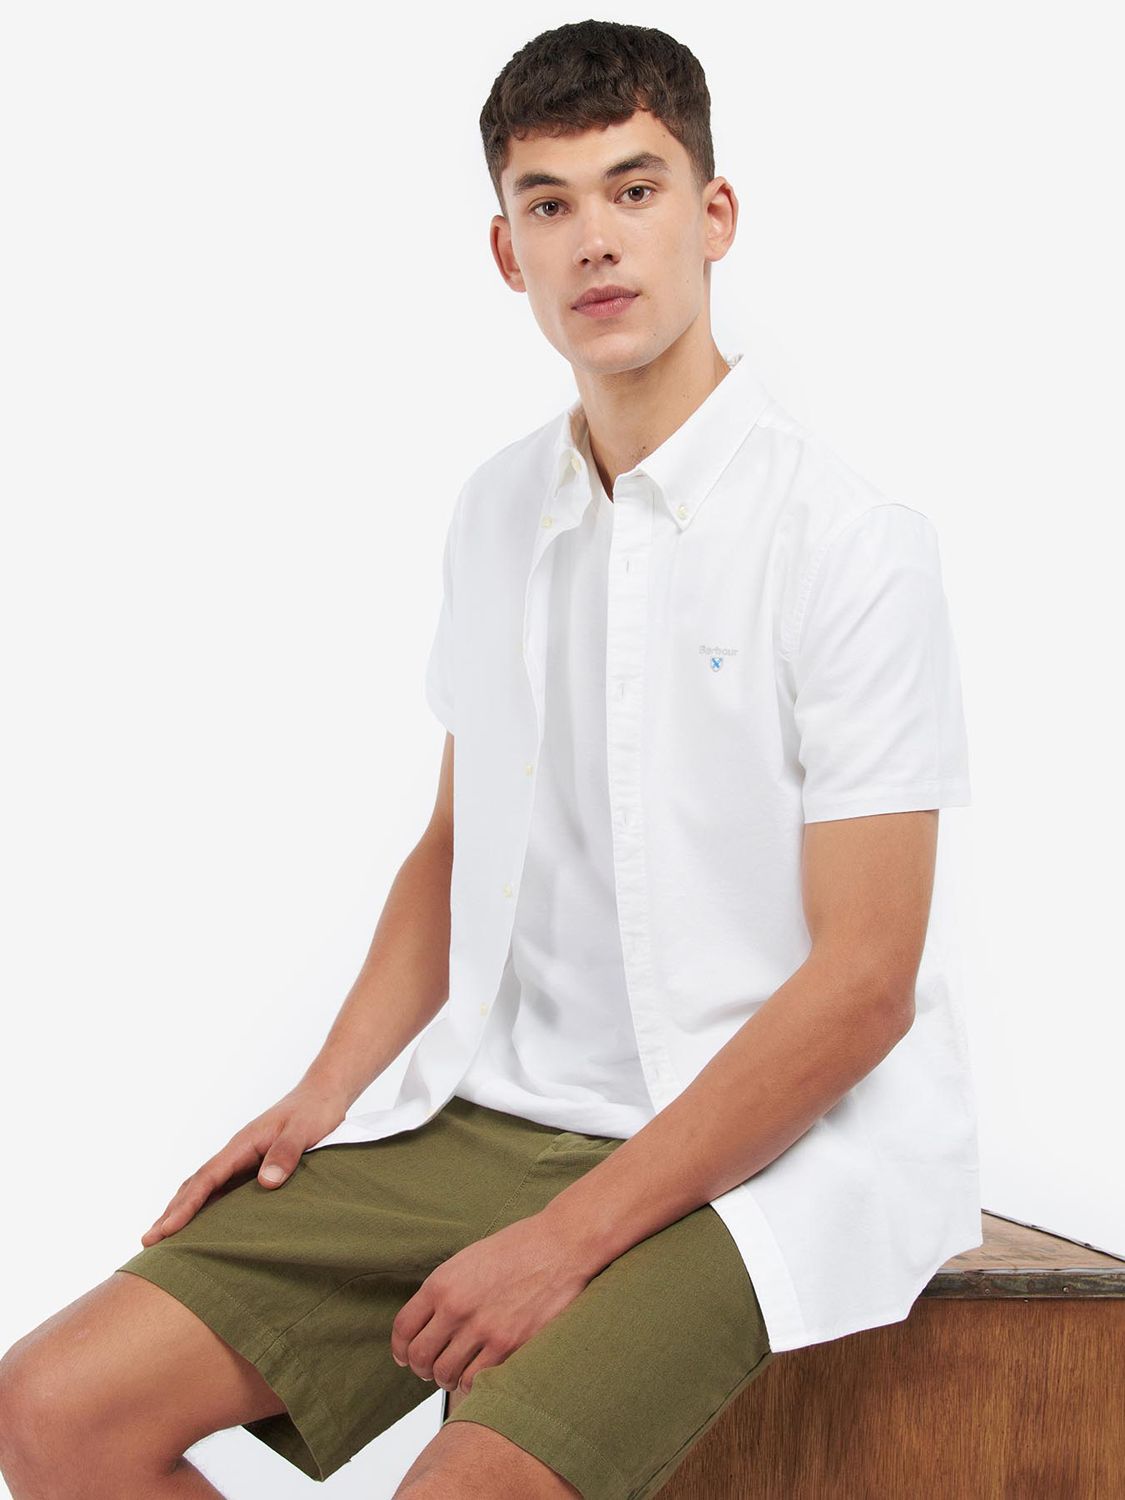 Рубашка Barbour Oxford из хлопка с коротким рукавом, белая рубашка с коротким рукавом из хлопка h